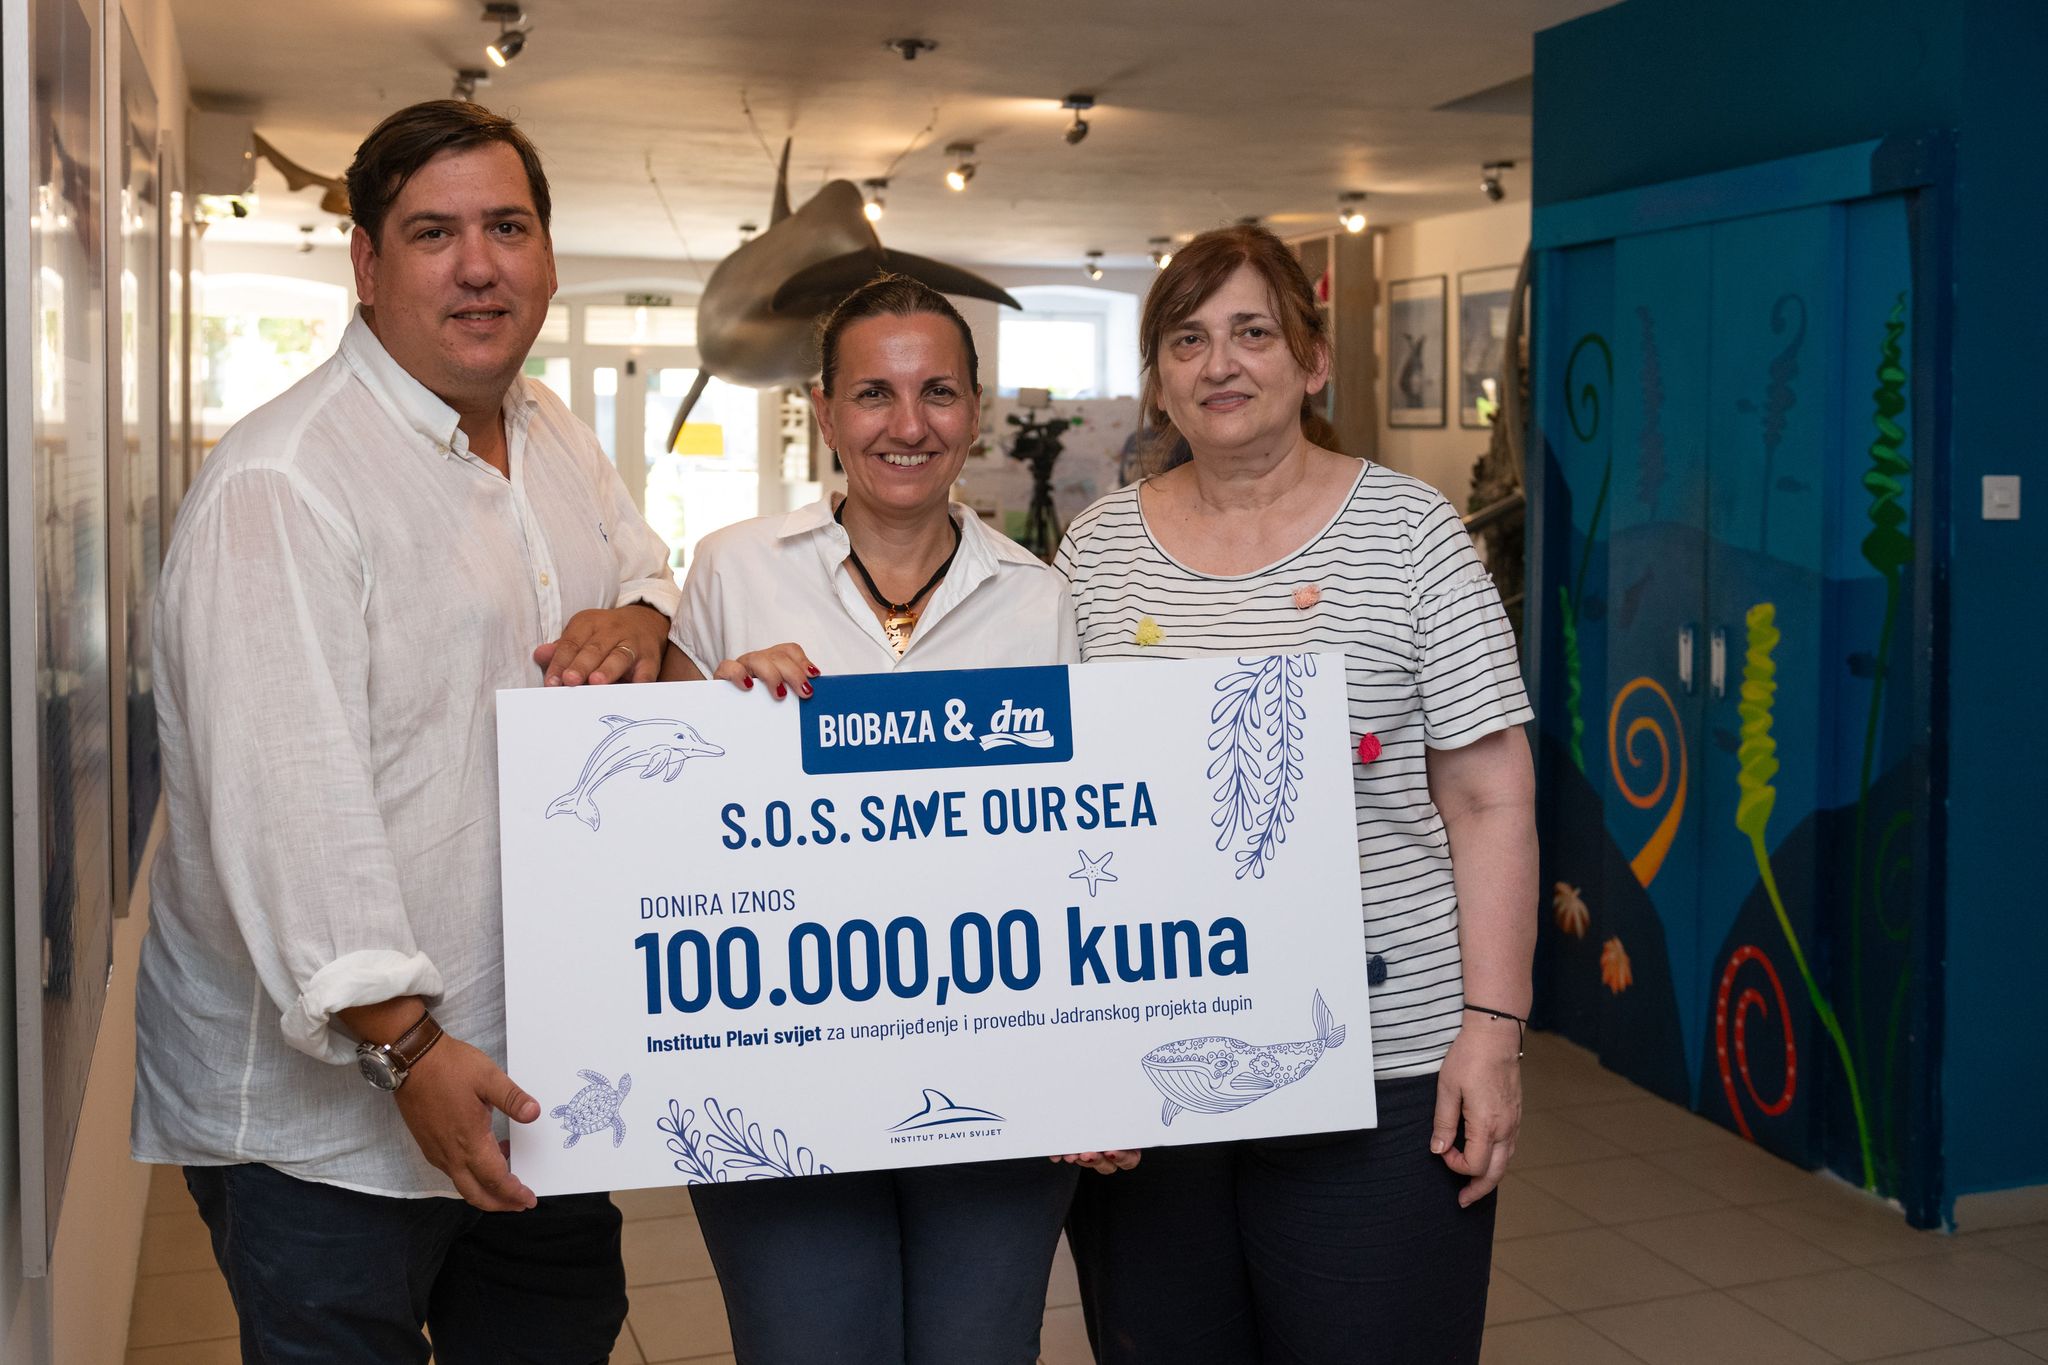 Biobaza i dm donirali stotinu tisuća kuna Institutu Plavi svijet za Jadranski projekt dupin